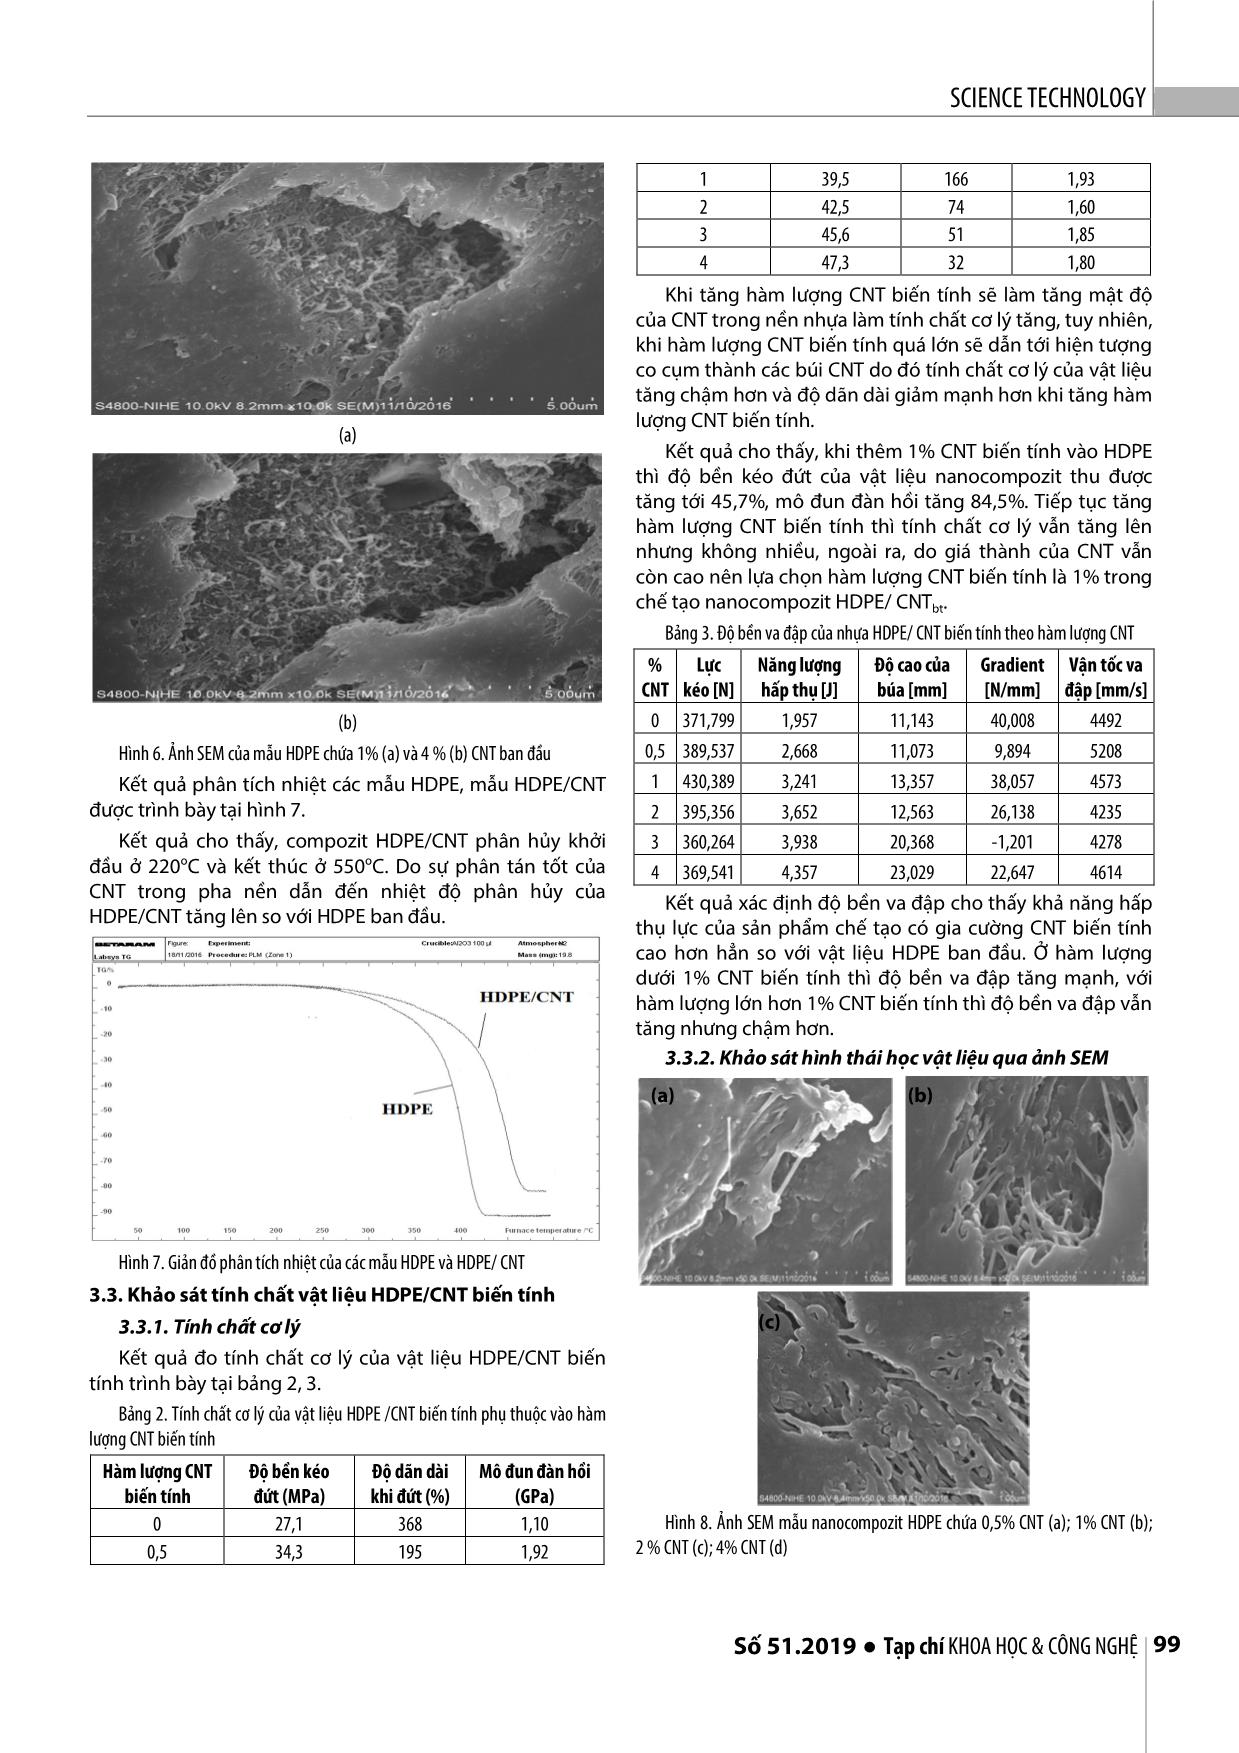 Chế tạo và khảo sát tính chất vật liệu polyme nanocompozit trên cơ sở polyetylen tỷ trọng cao (HDPE) với ống nano cacbon đa tường (MWCNT) trang 4